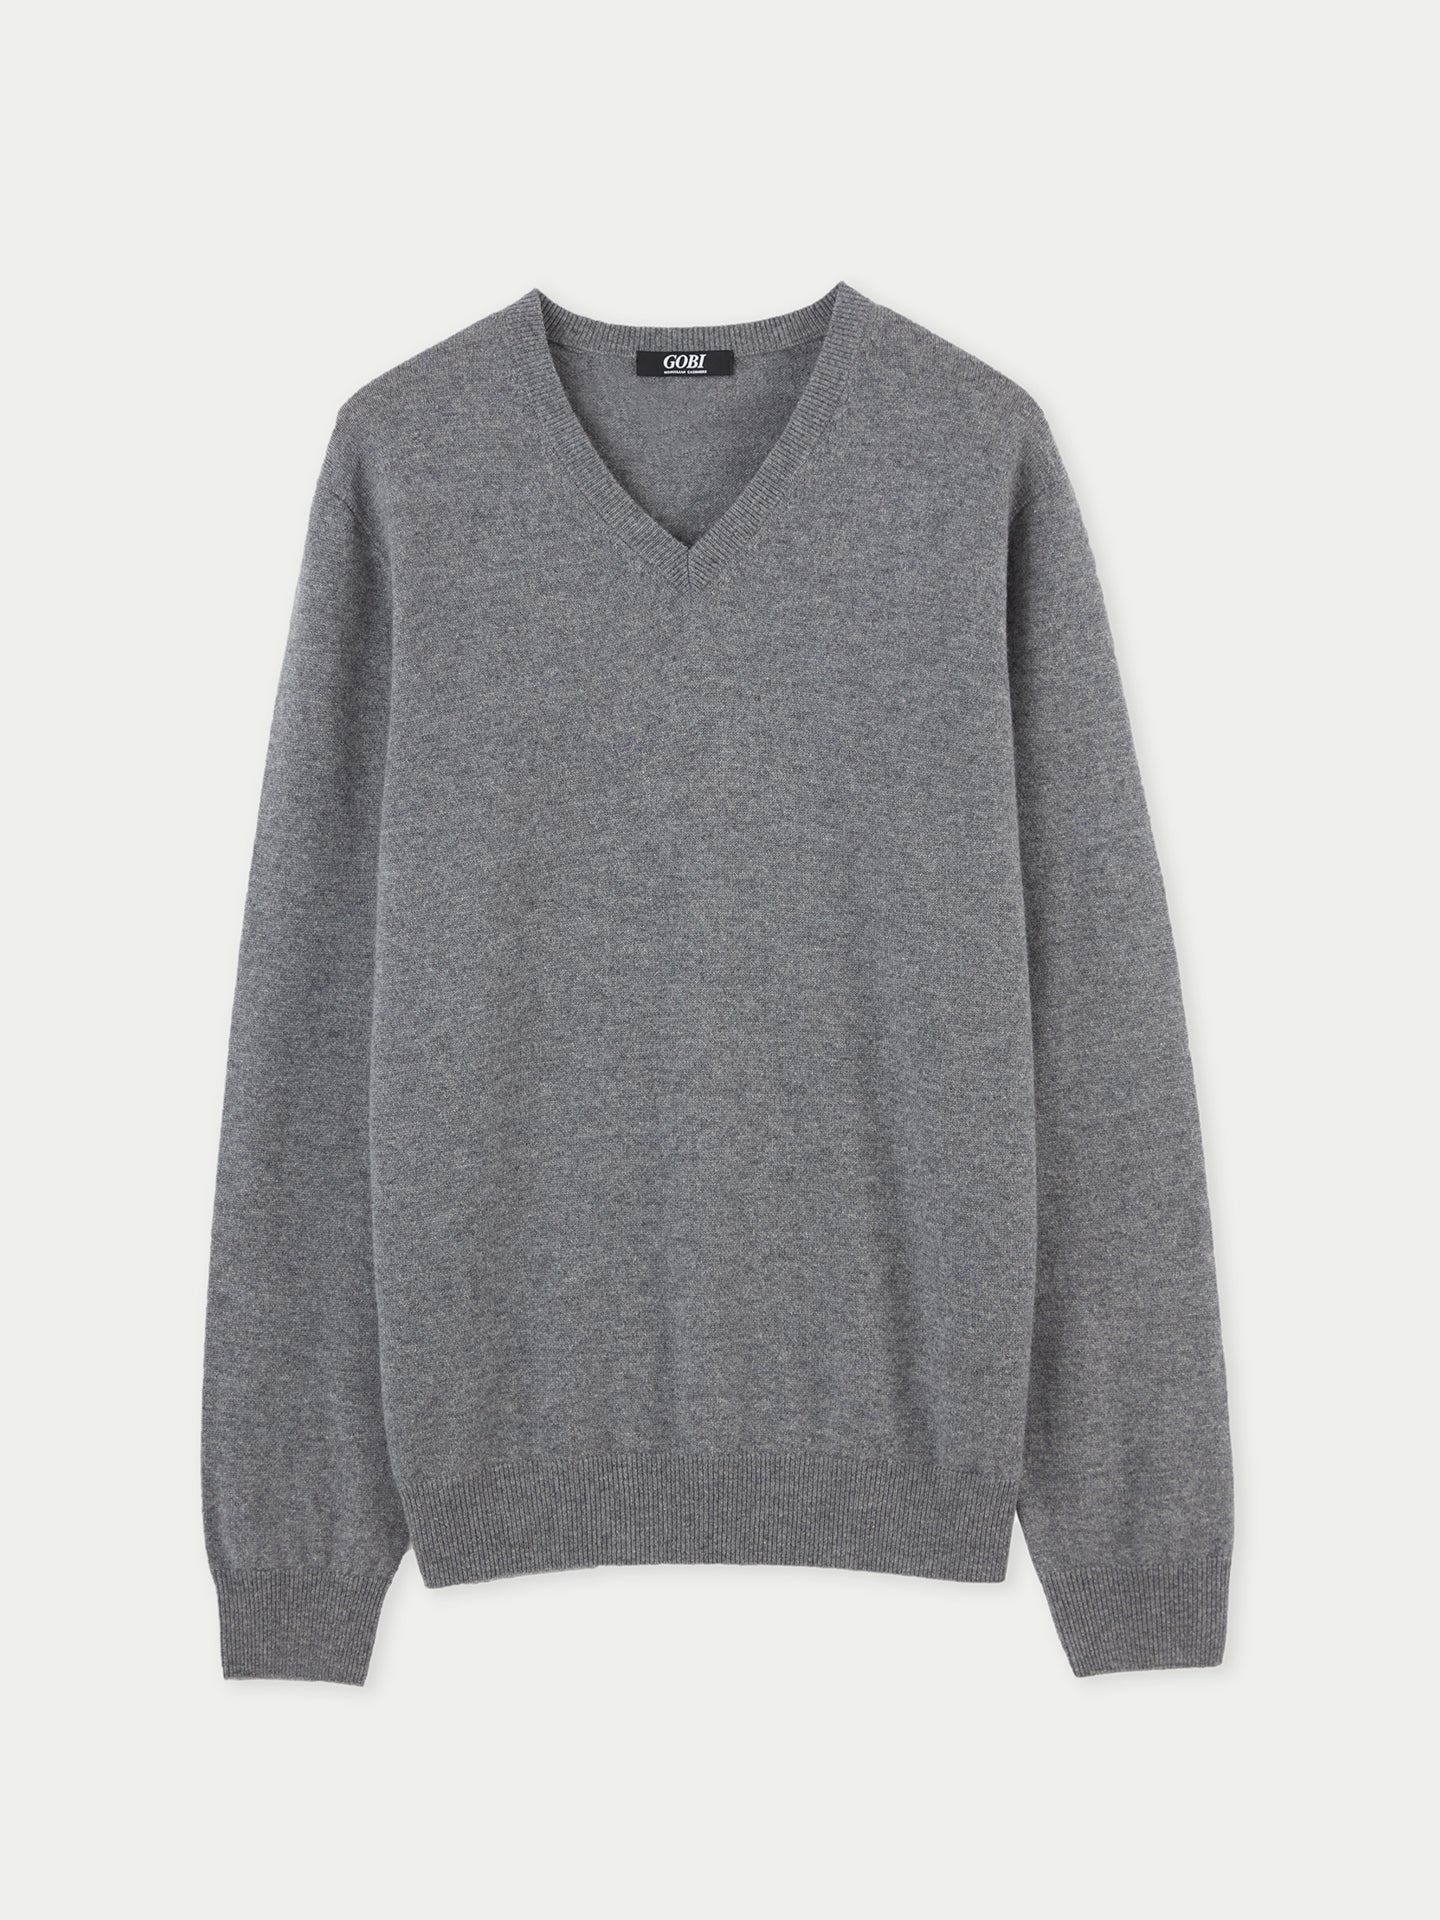 Men's Cashmere V-Neck Sweater Dim Gray - Gobi Cashmere